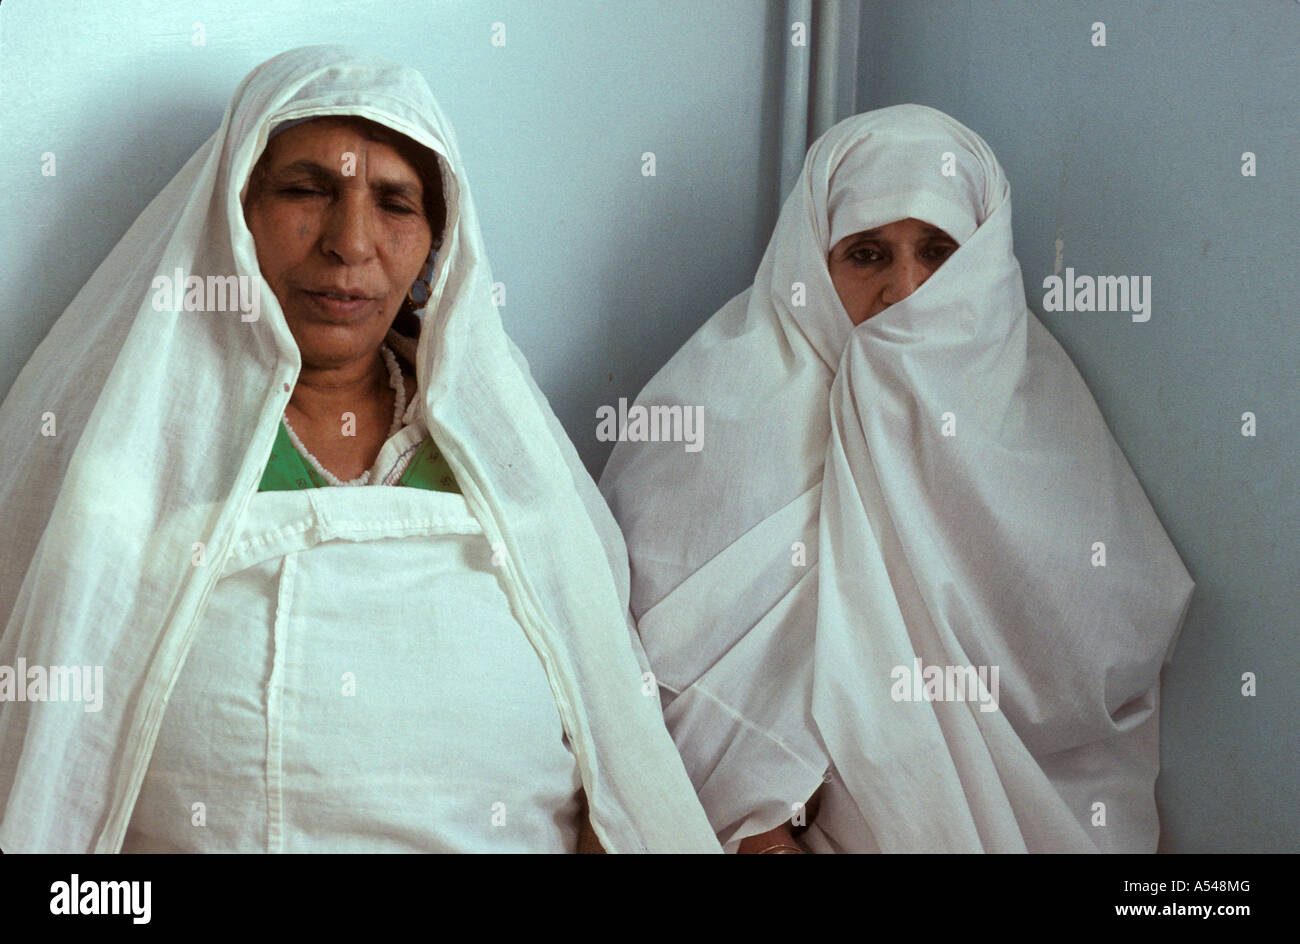 Painet hn1727 Algérie 3177 femmes âgées Bou Saada au pays en développement, de pays moins développés économiquement émergentes de la culture Banque D'Images